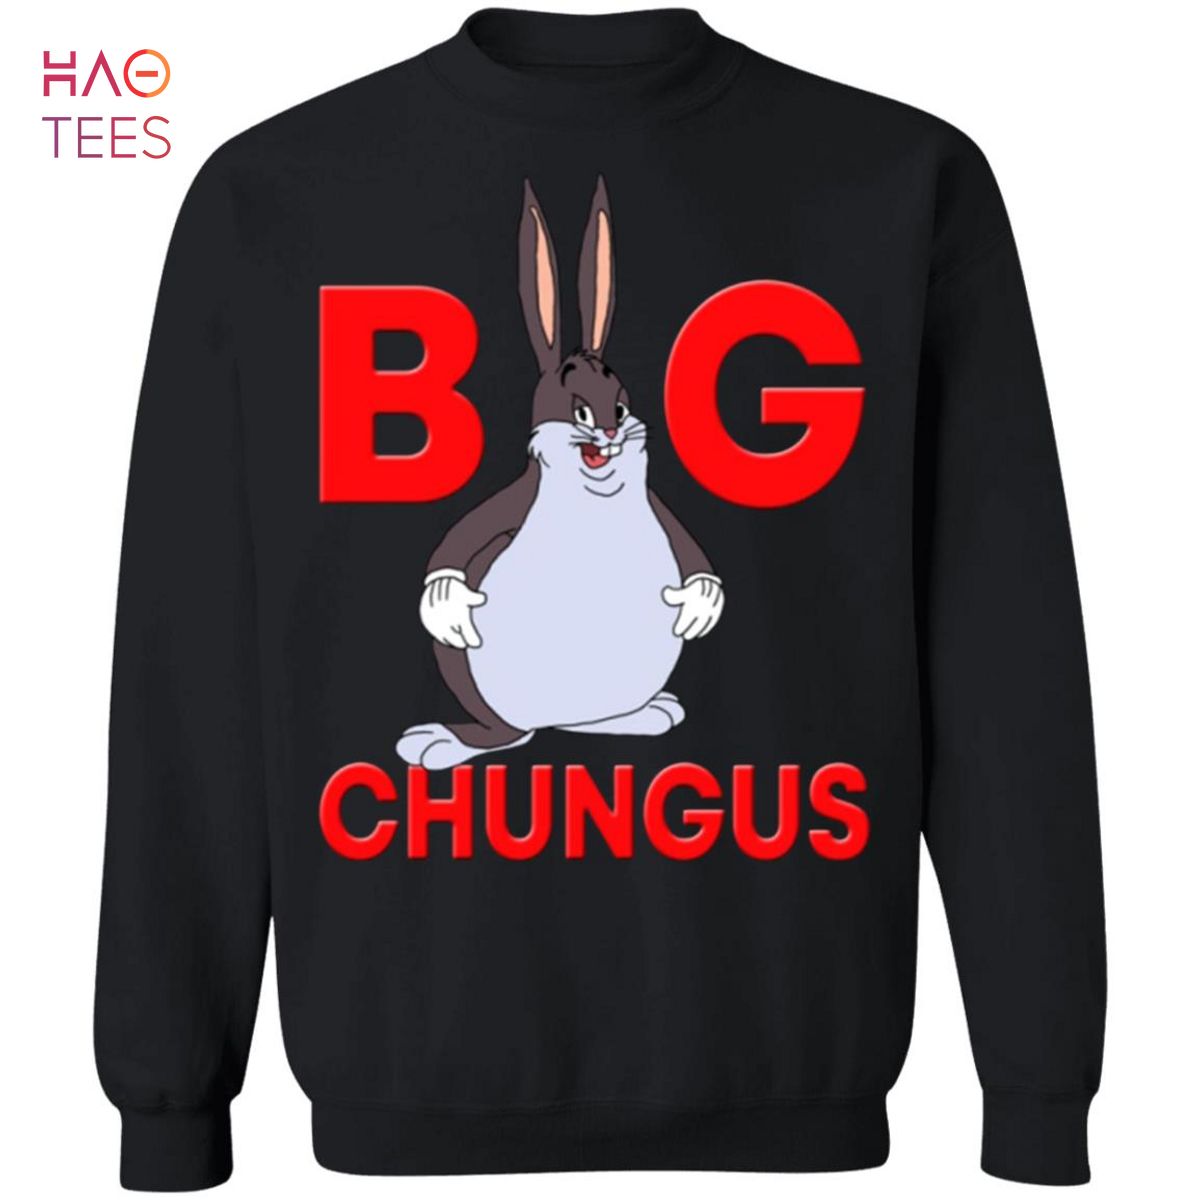 HOT Big Chungus Sweatshirt